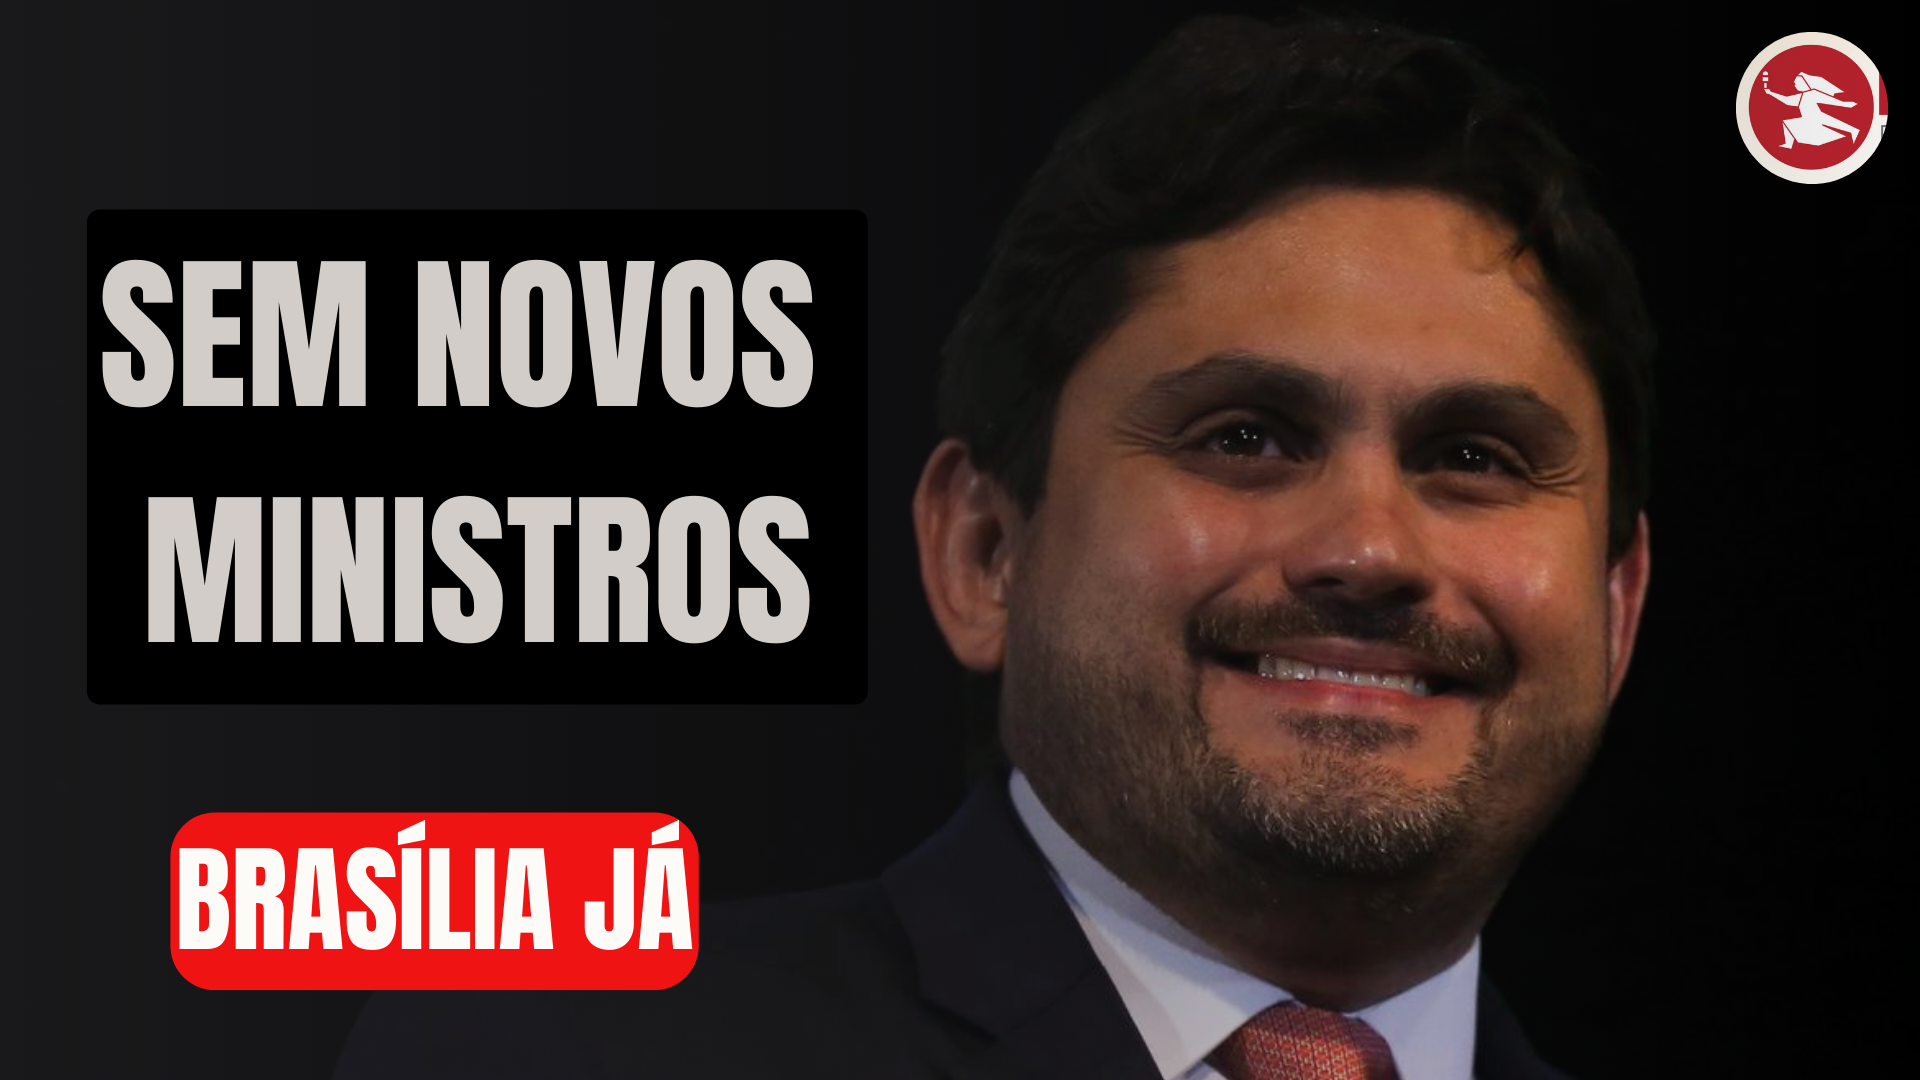 BRASÍLIA JÁ: Sem os novos ministros, um rolo com um antigo